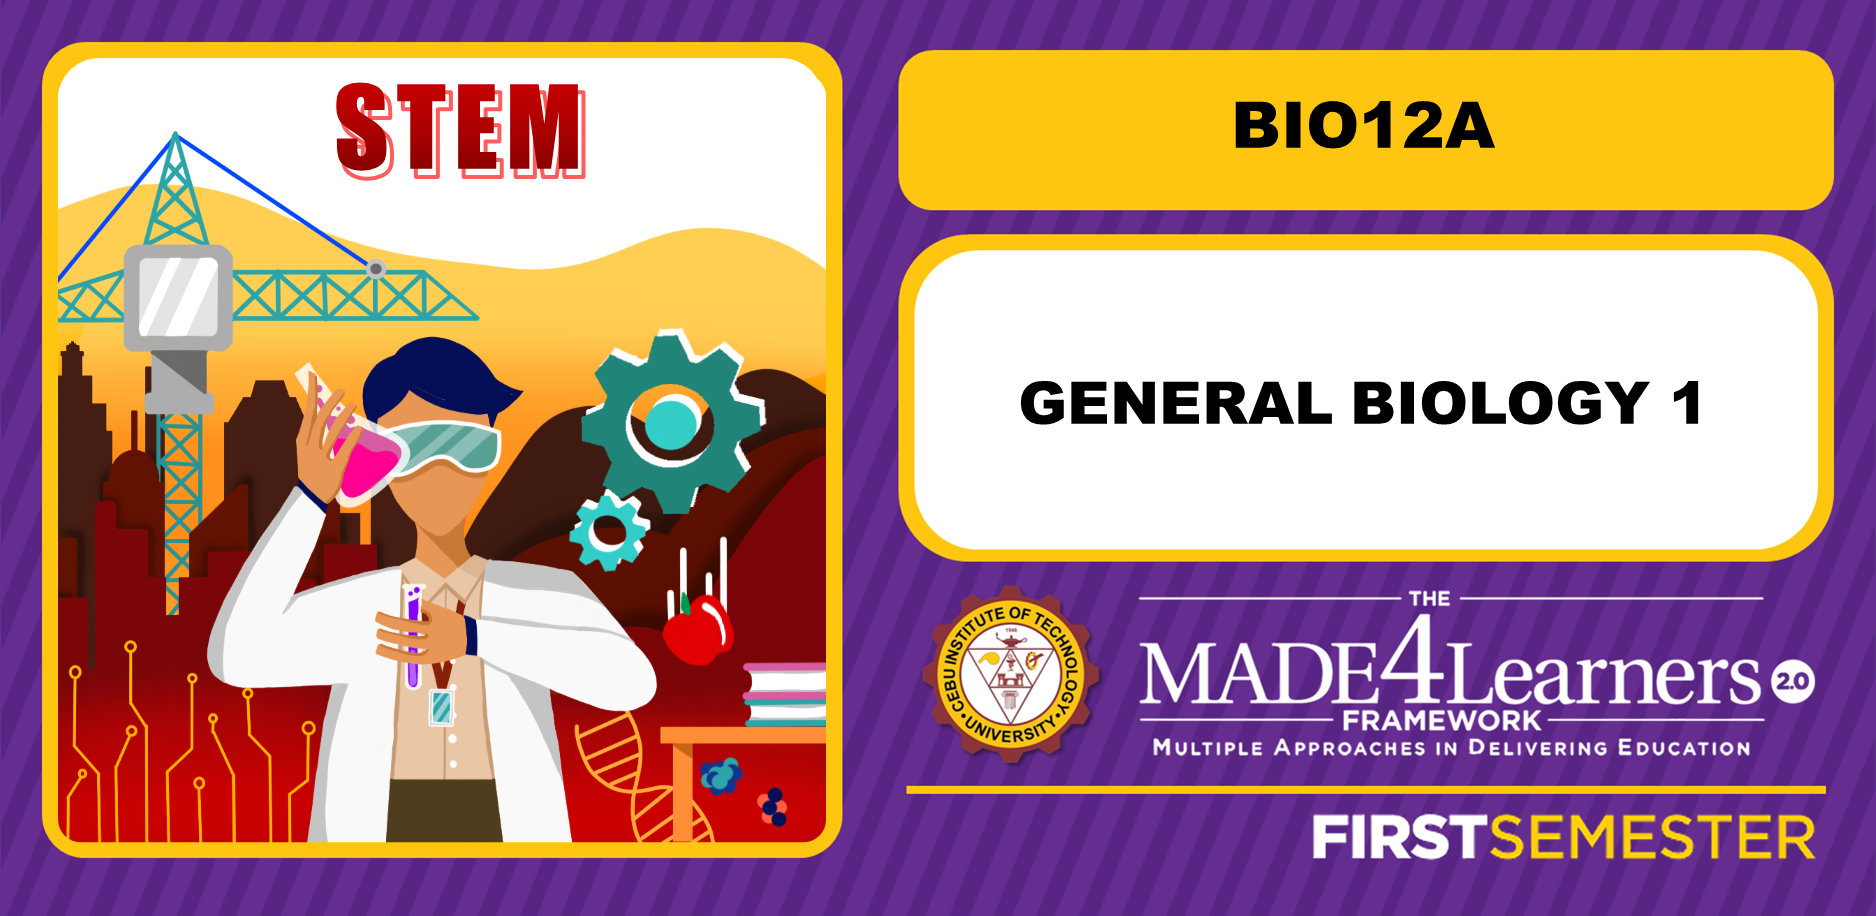 BIO12A: General Biology 1 (Mr. Oyag)